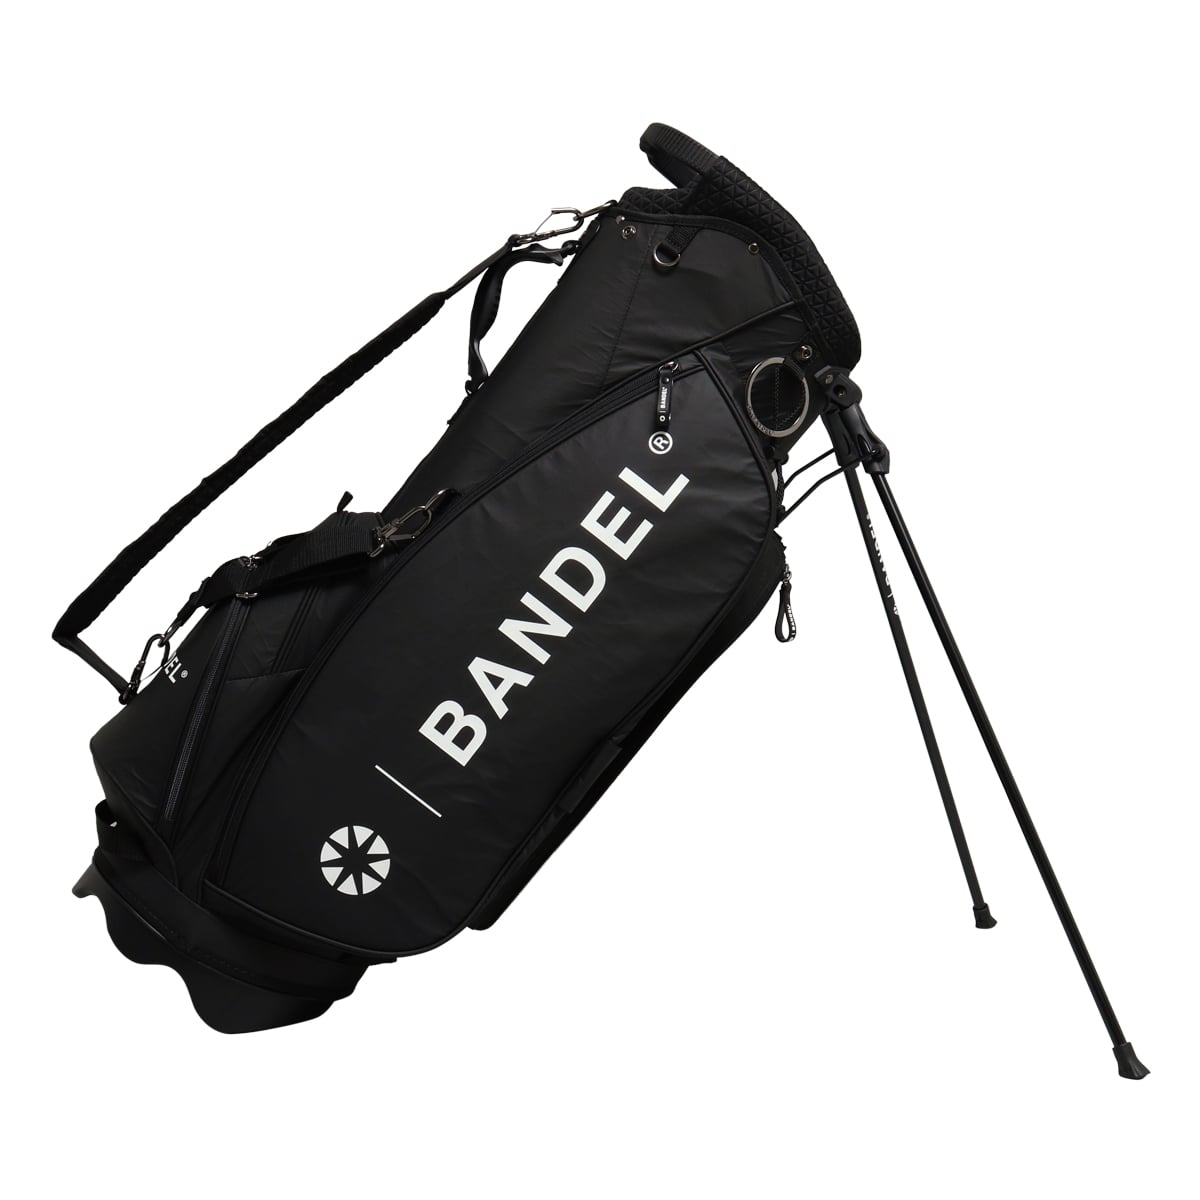 バンデル ゴルフ キャディバッグ スタンド式 9.5型 46インチ対応 メンズ BGI-3SCB BANDEL CRUMPLE STAND CADDY  BAG ゴルフバッグ スタンドバッグ